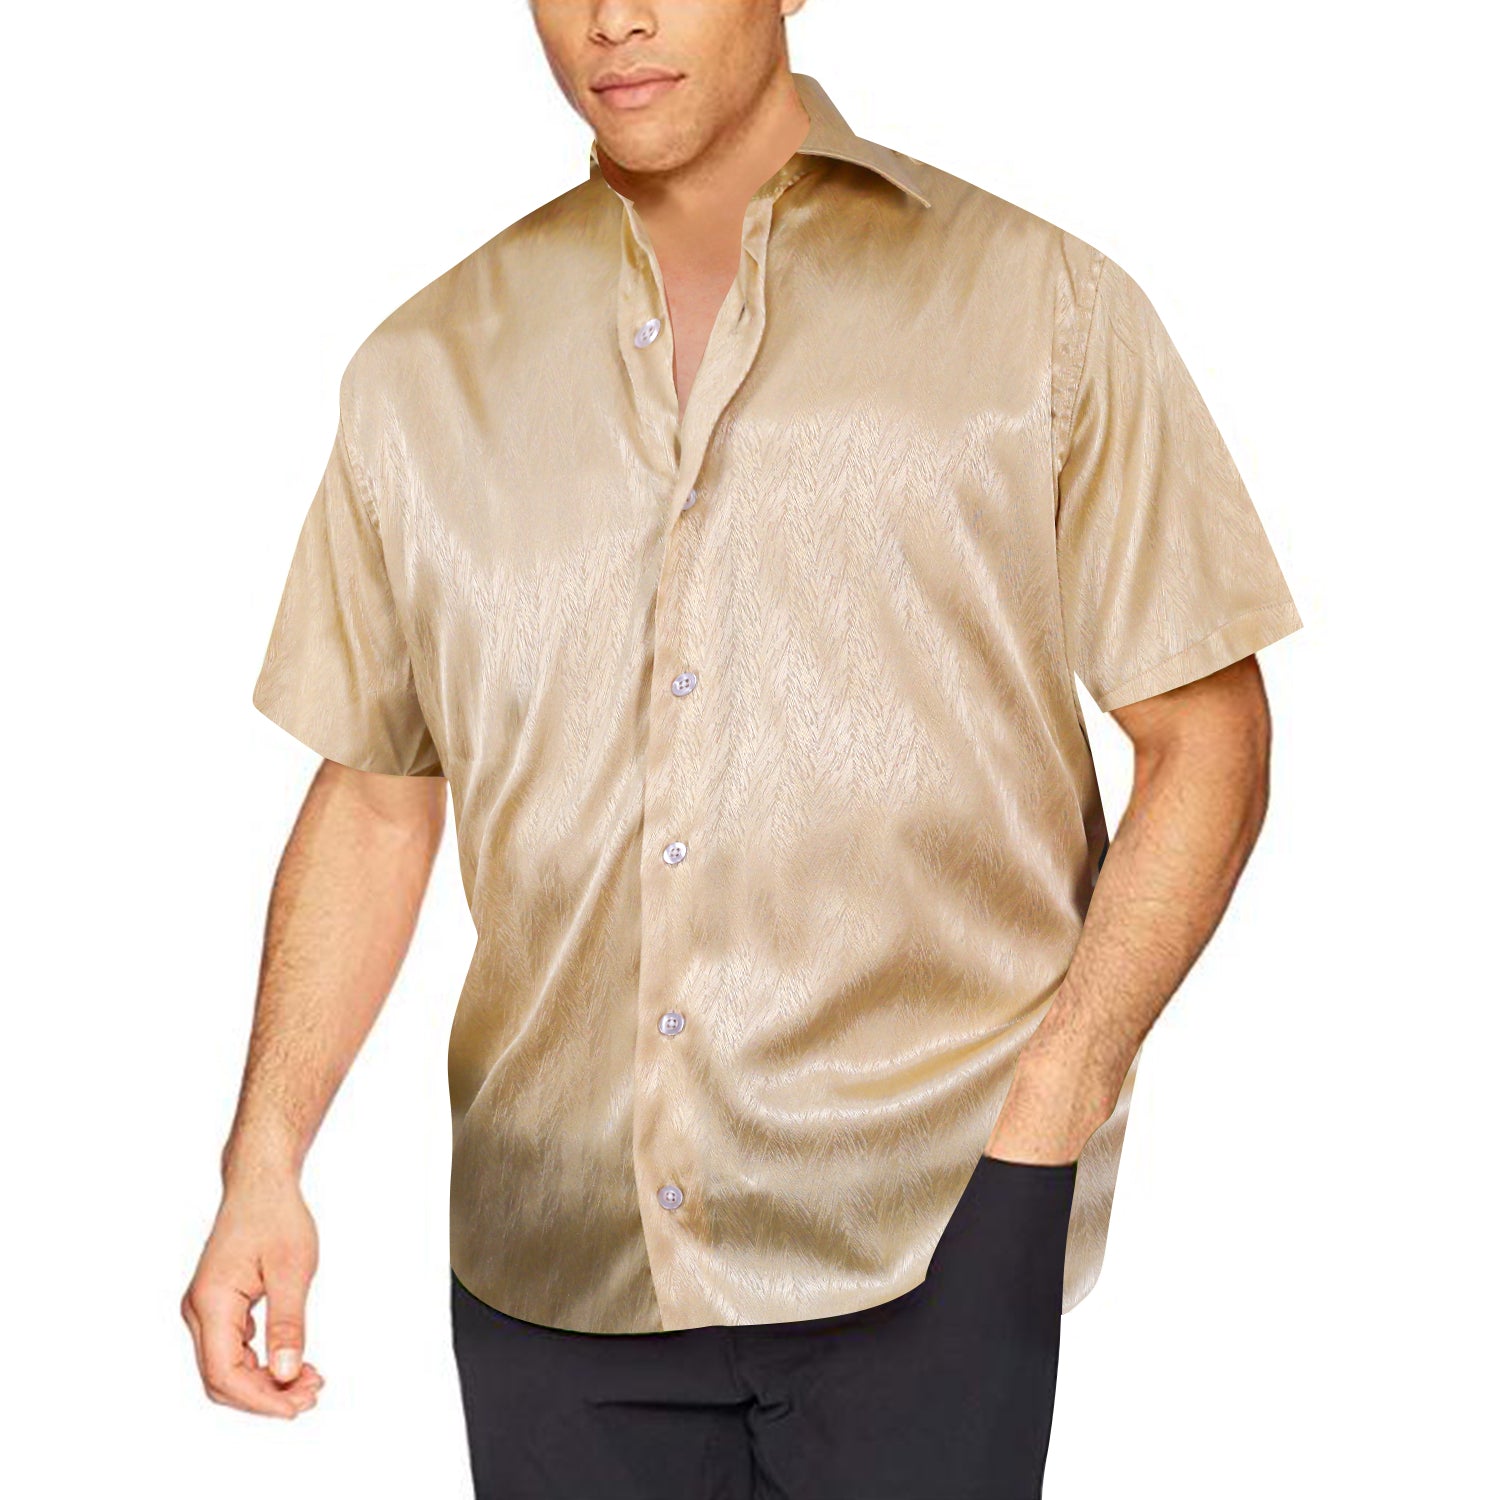 Barry.wang Light Gold Solid Short Sleeves Silk Shirt